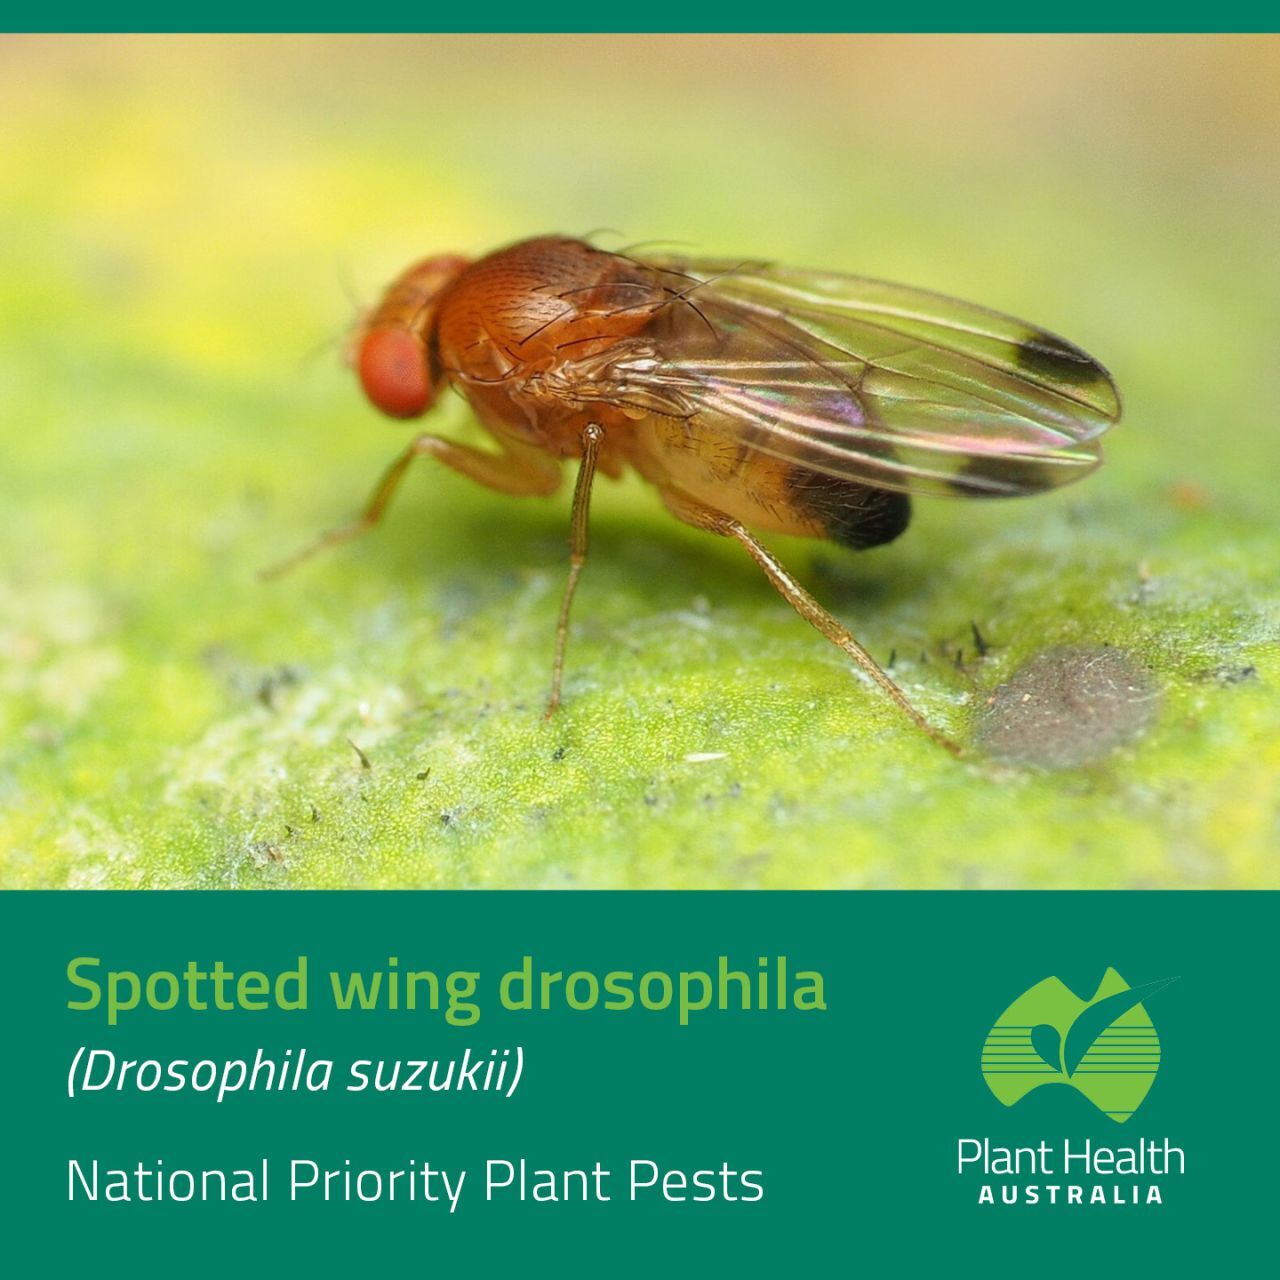 Drosophila suzukii in primo piano: protezione delle colture australiane dal parassita globale